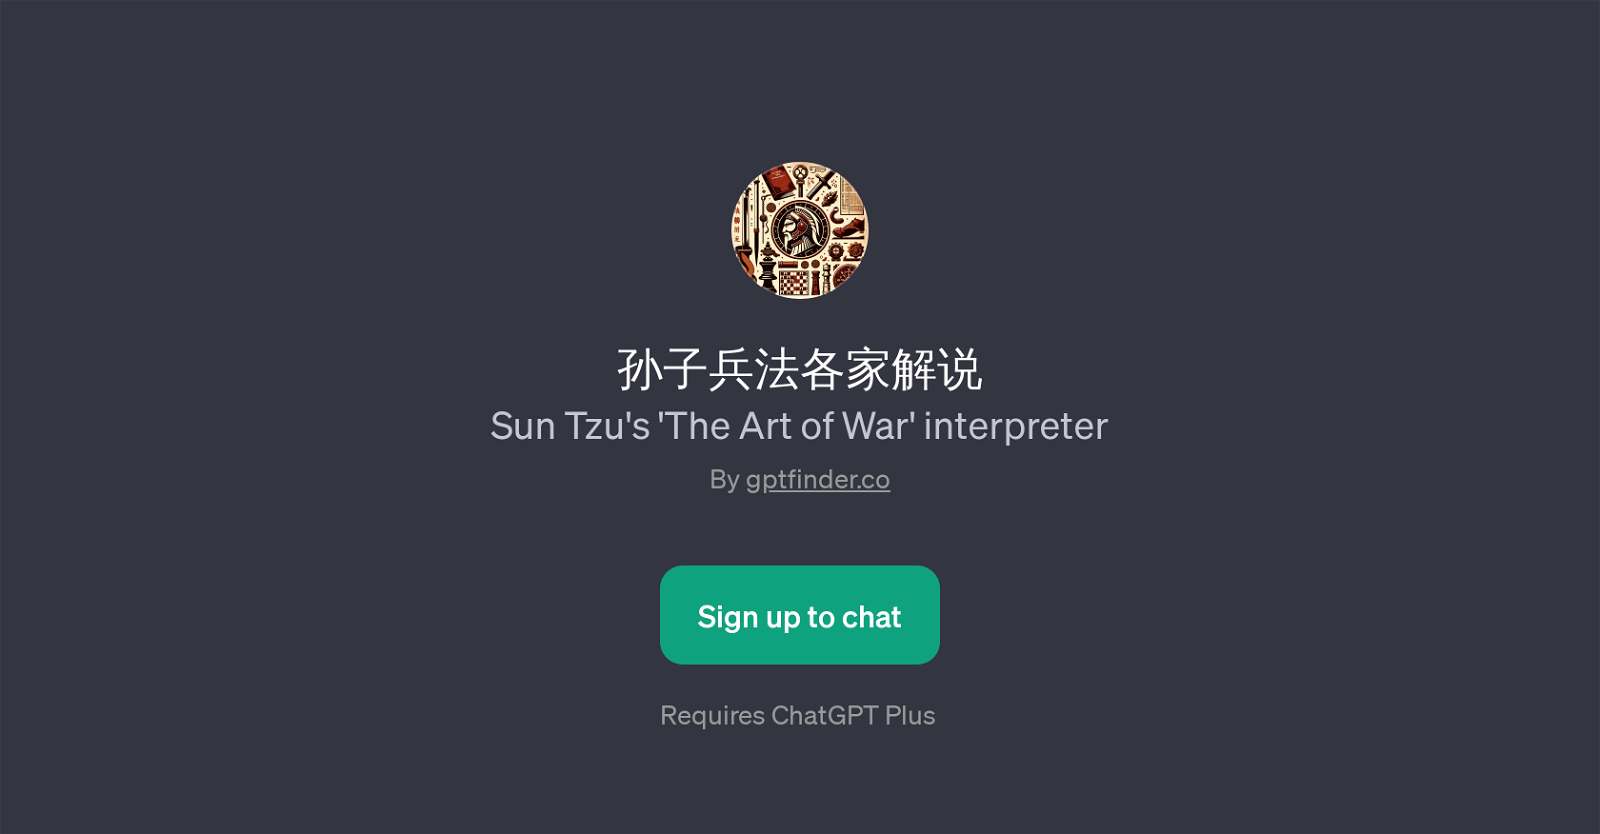 Sun Tzu's 'The Art of War' interpreter GPT website